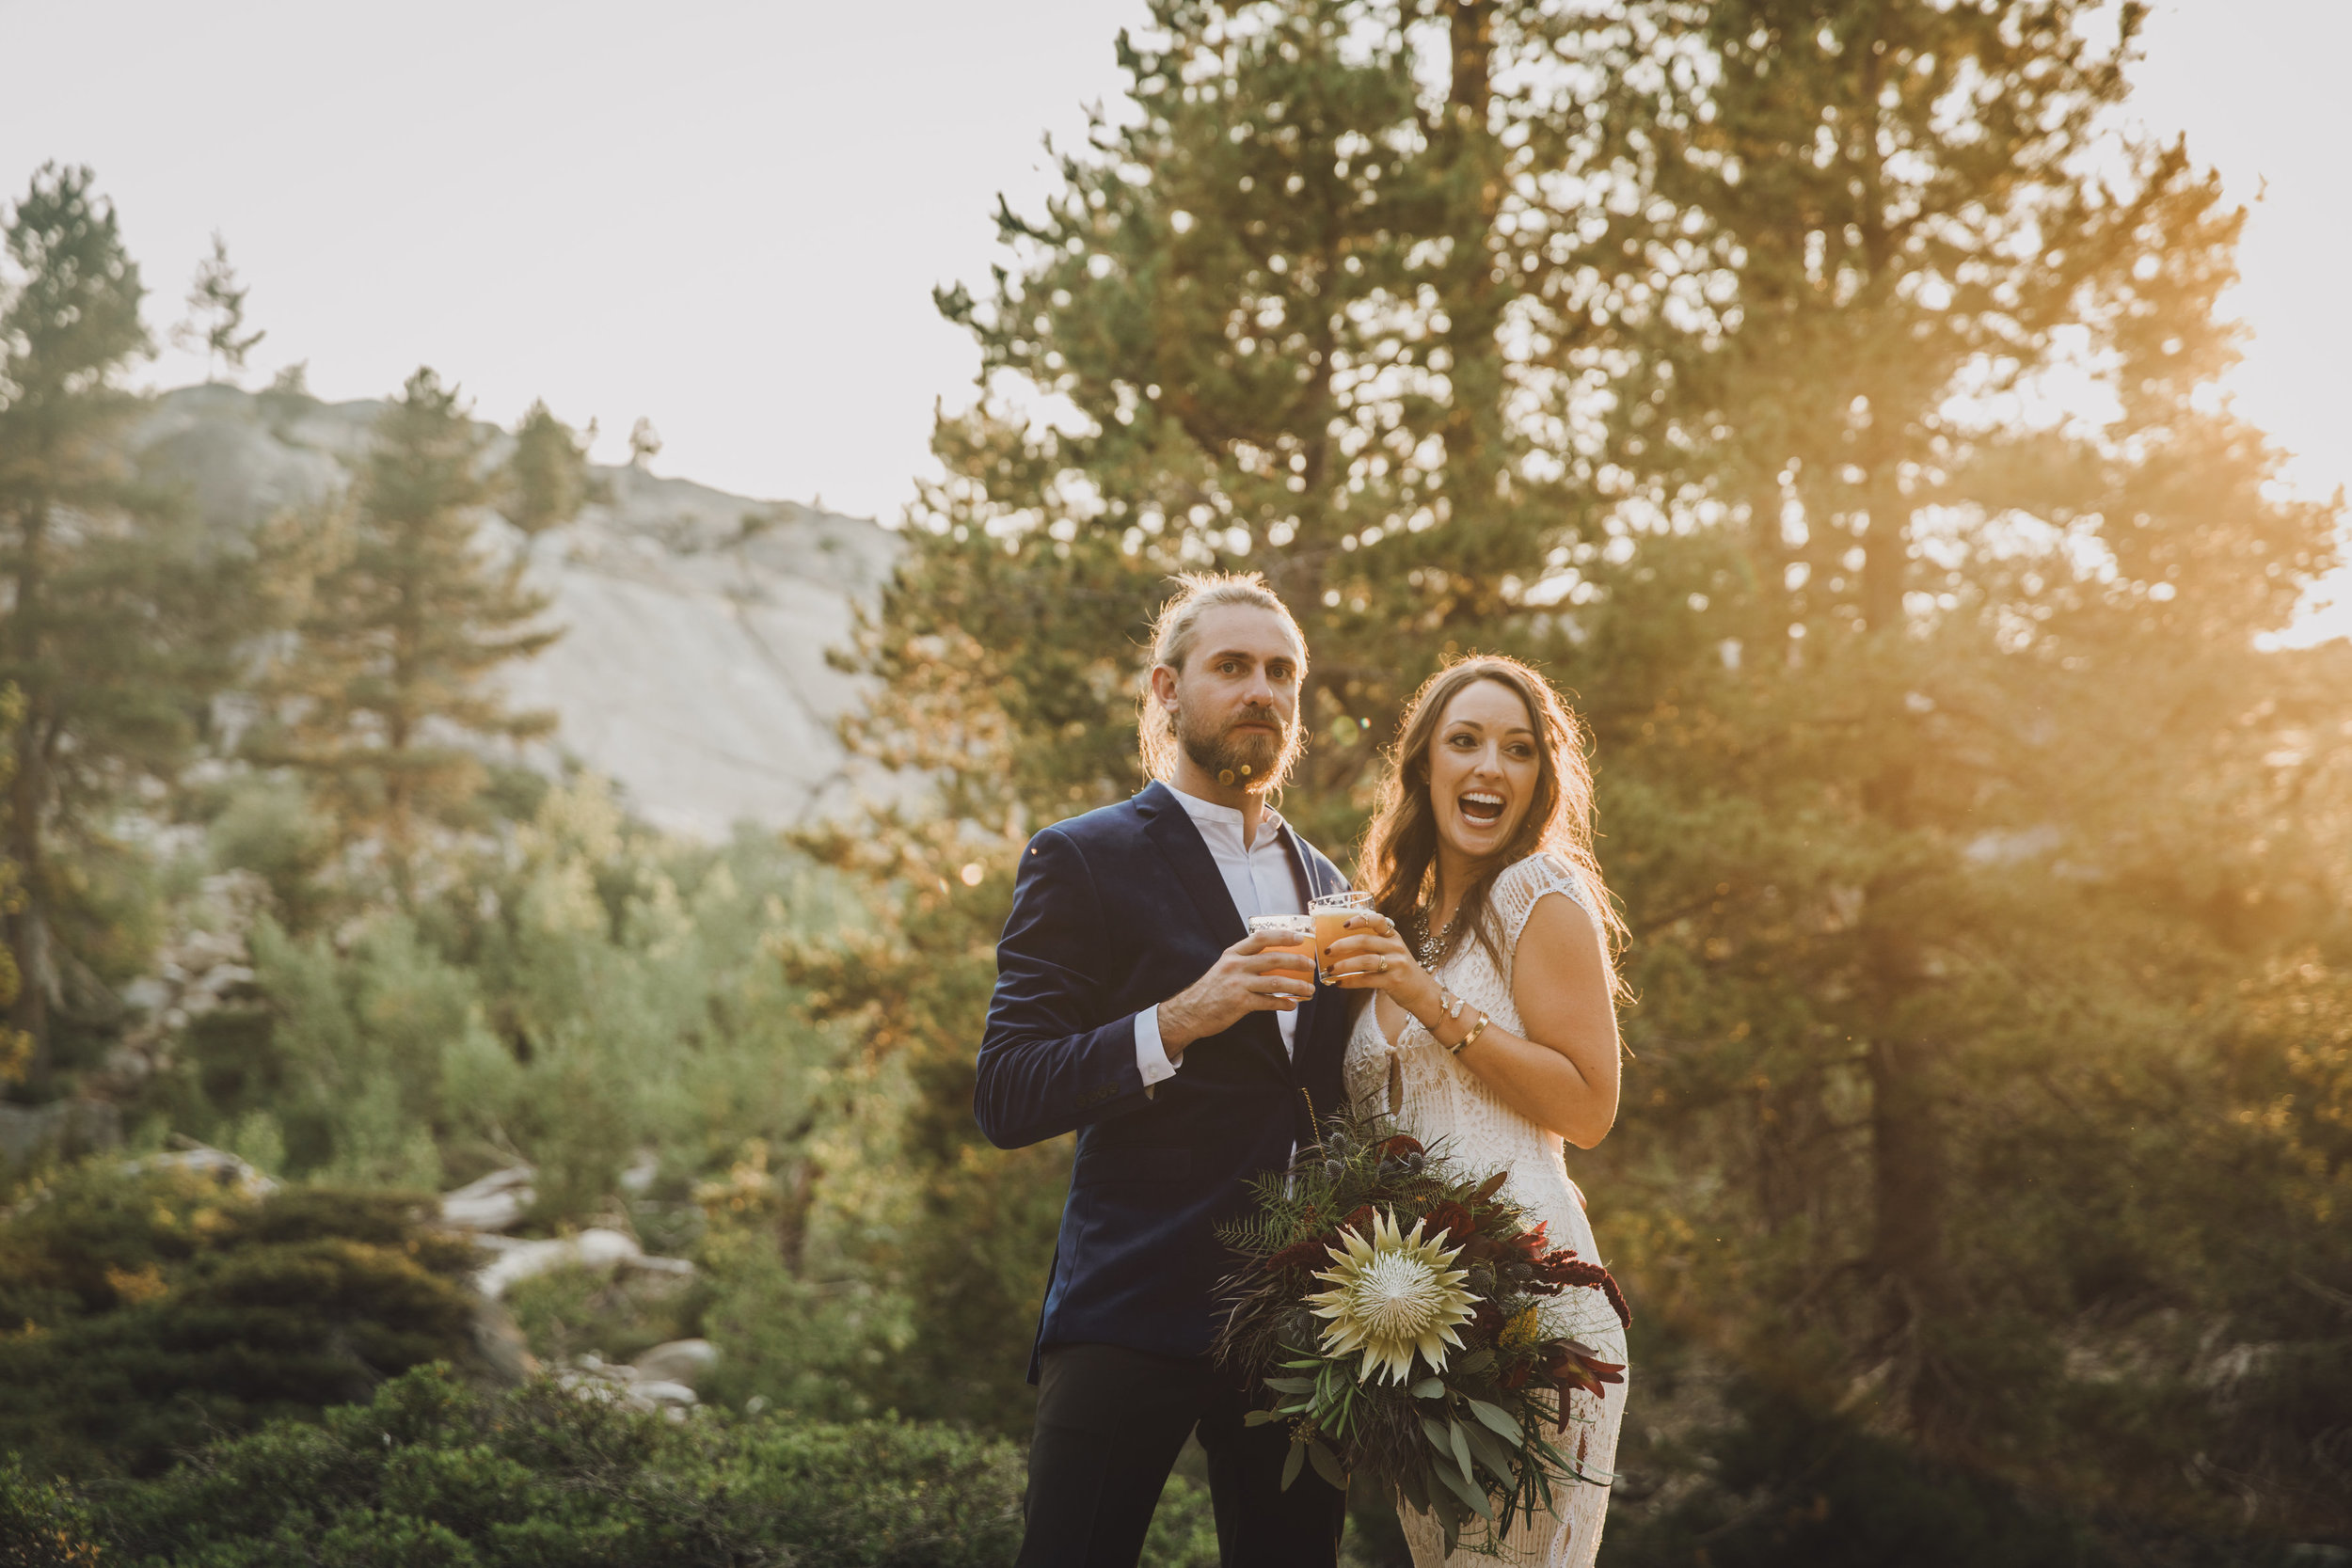 wedding florist bloom generation floral design san francisco oakland tahoe 